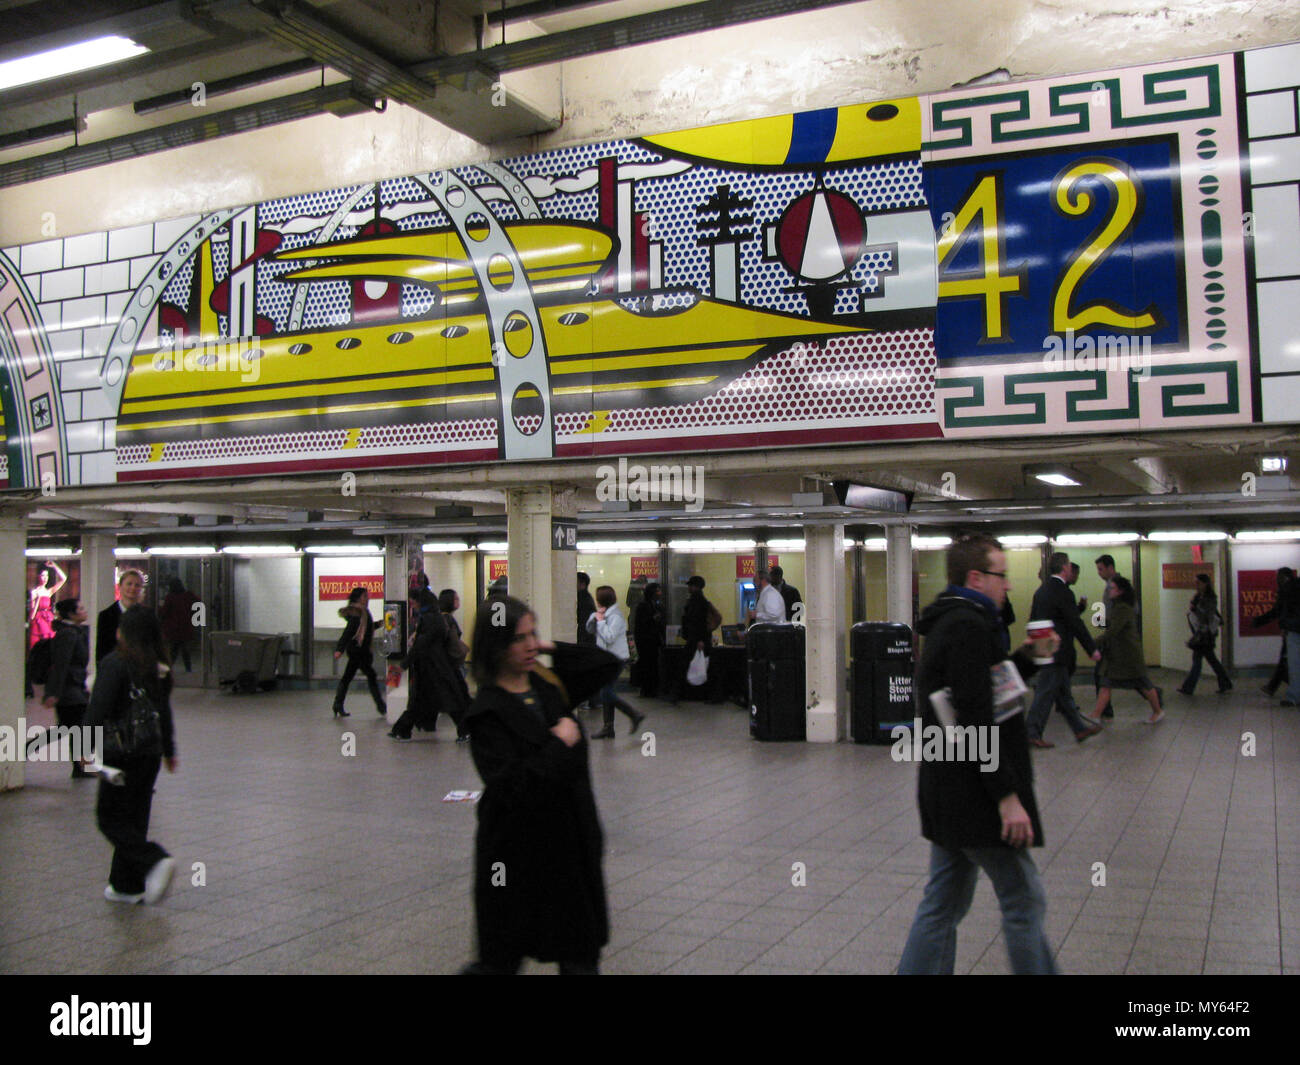 . Times Square Mural . Parte di uno splendido murale di Roy Lichtenstein in Times Square stazione della metropolitana. 11 novembre 2011, 10:43. Eden, Janine e Jim da New York City caricato da vcohen 323 Lichtenstein sotto Times Square vc Foto Stock